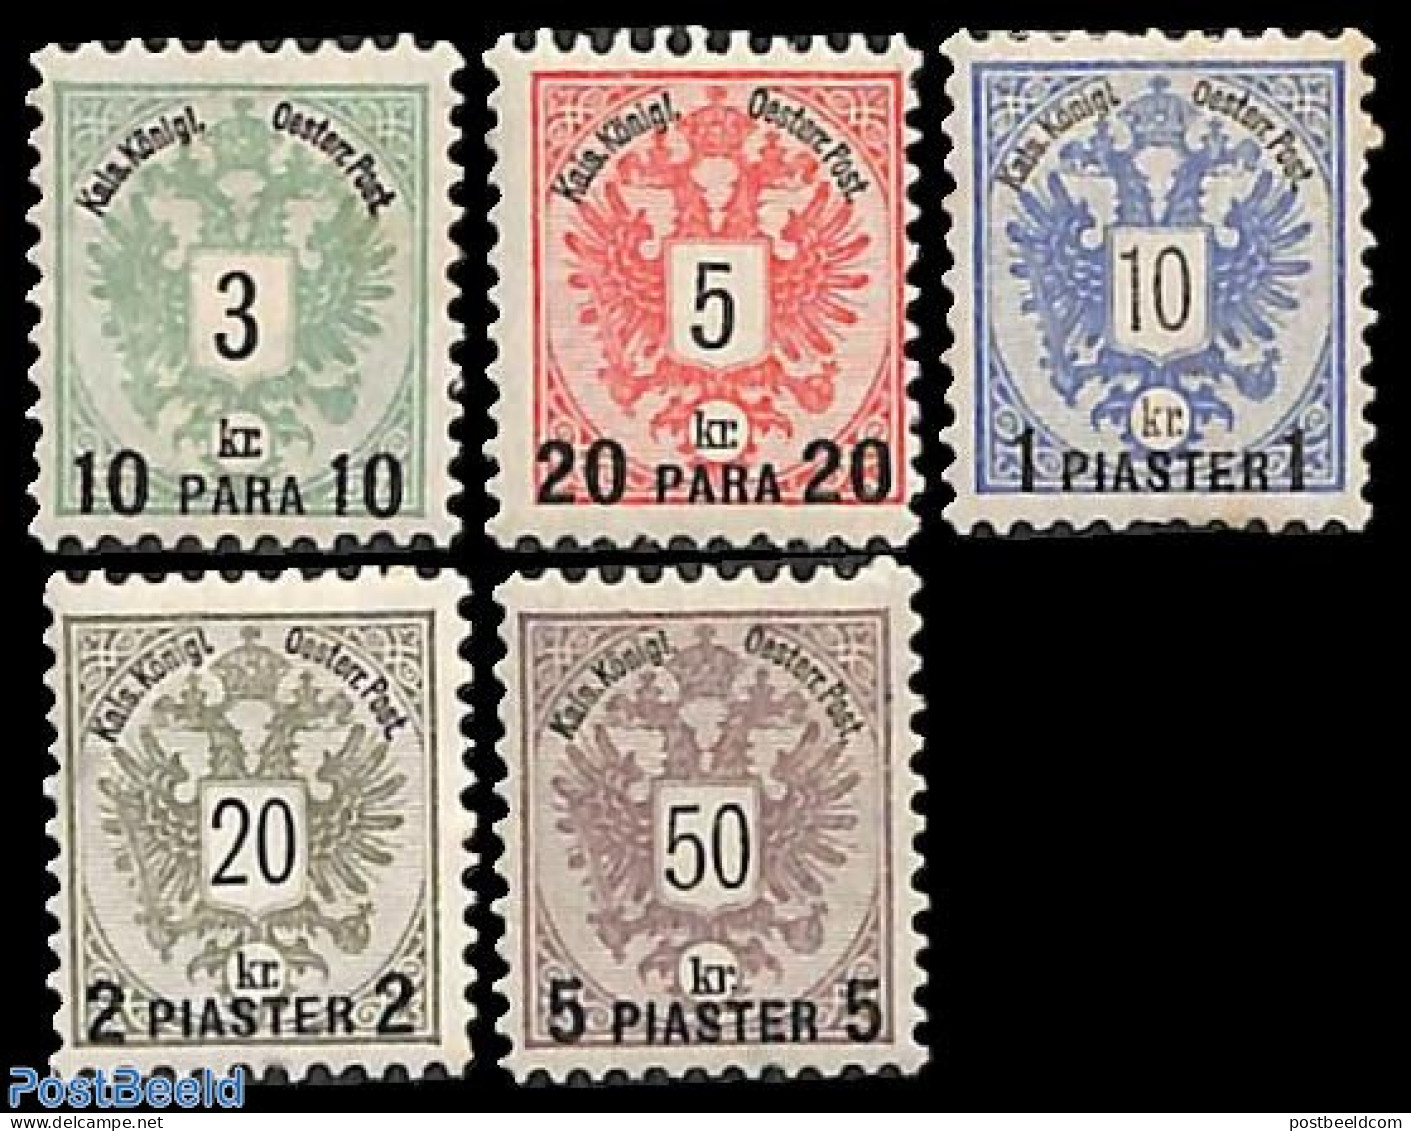 Austria 1888 Levant Post 5v, Unused (hinged) - Neufs